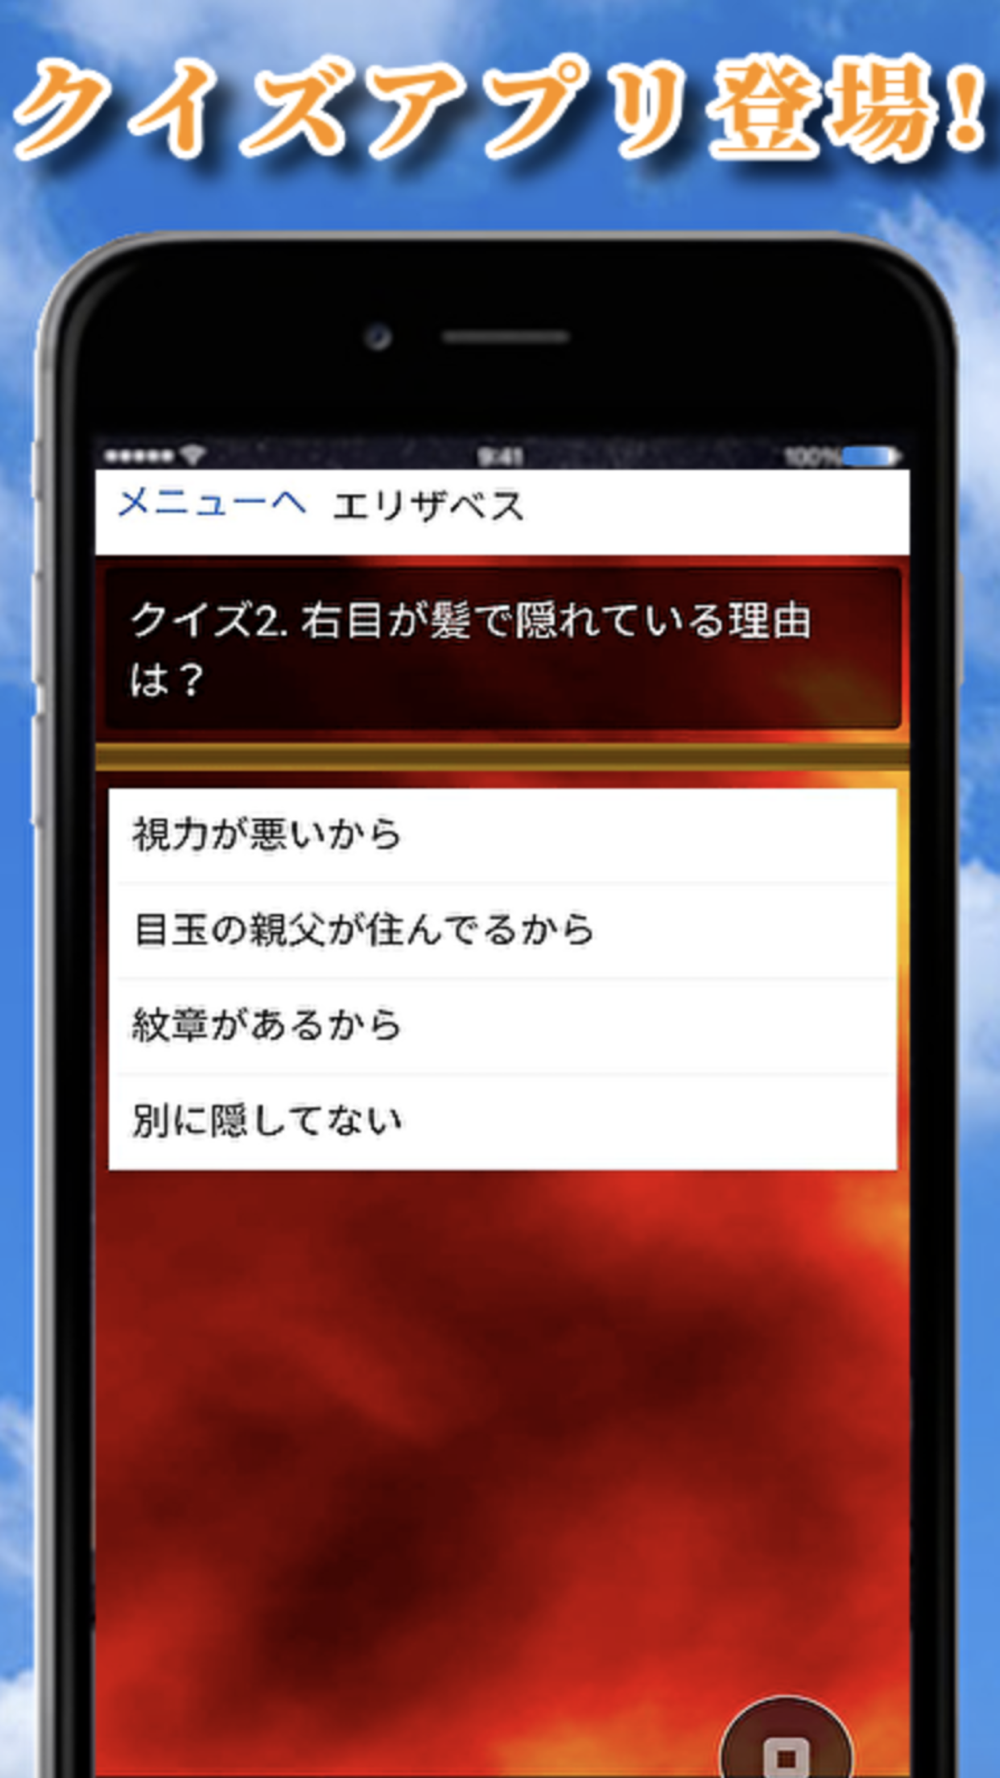 クイズfor七つの大罪 Free Download App For Iphone Steprimo Com